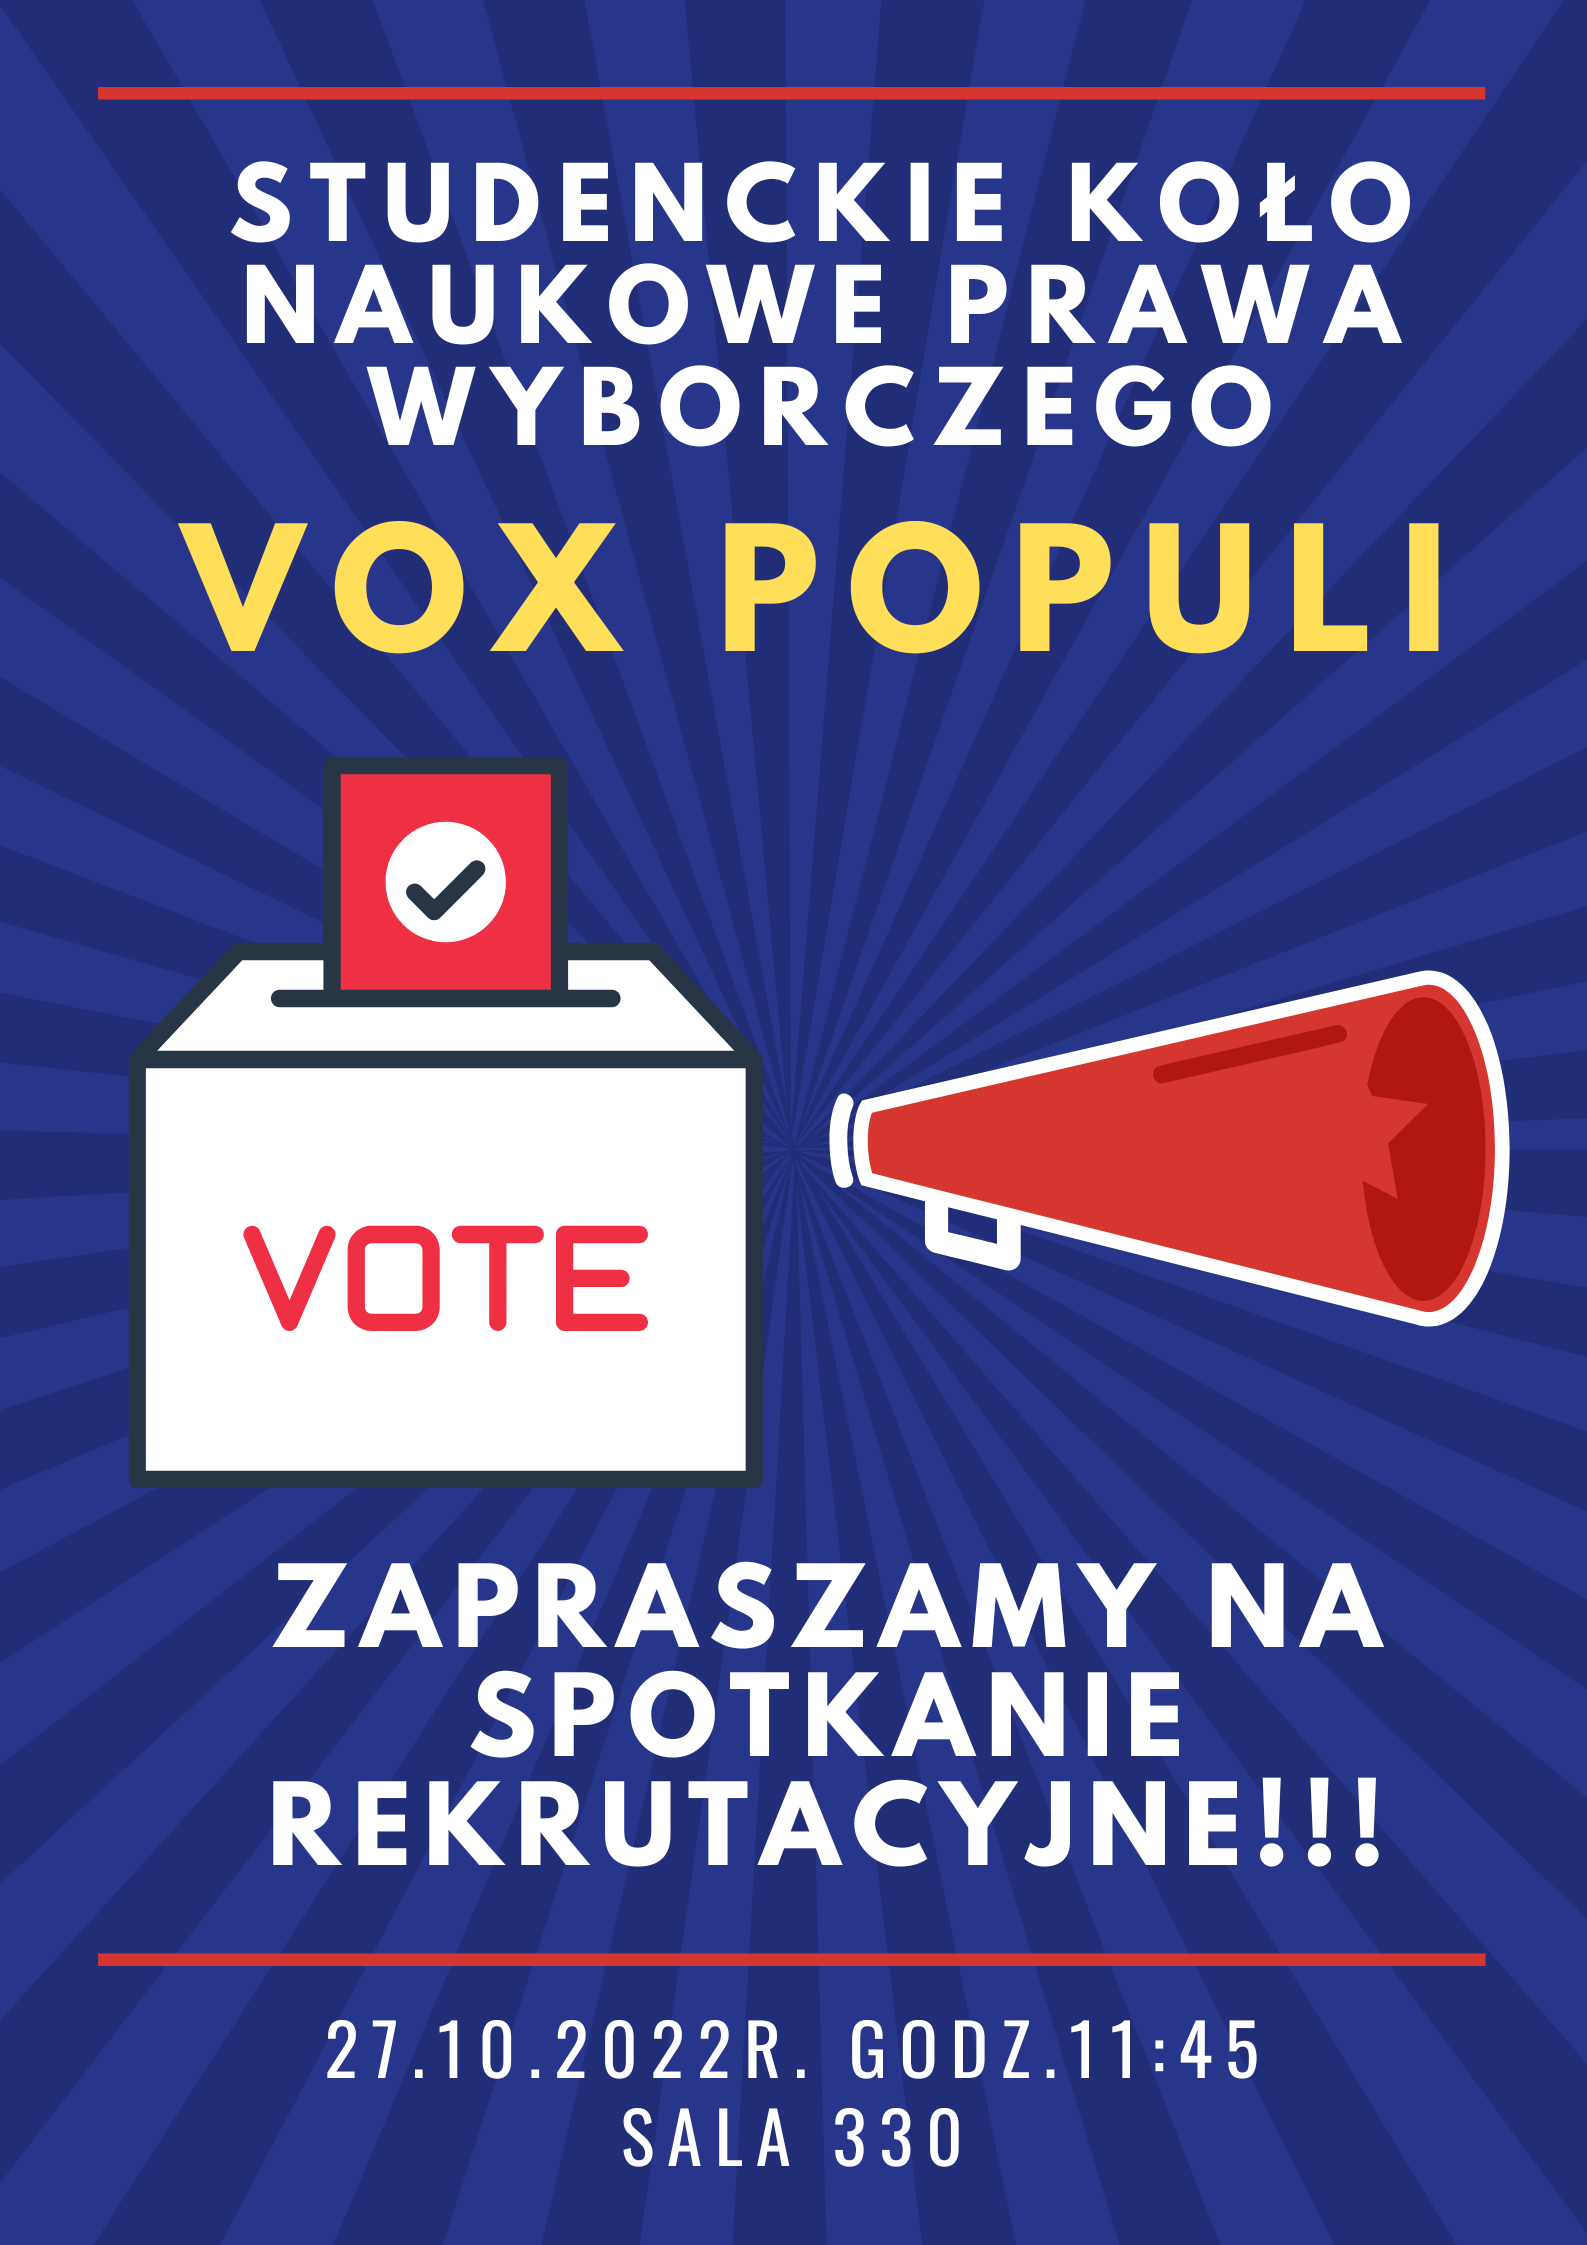 Spotkanie rekrutacyjne Koła Naukowego Prawa Wyborczego VOX POPULI – 27 października 2022 r., g. 11.45